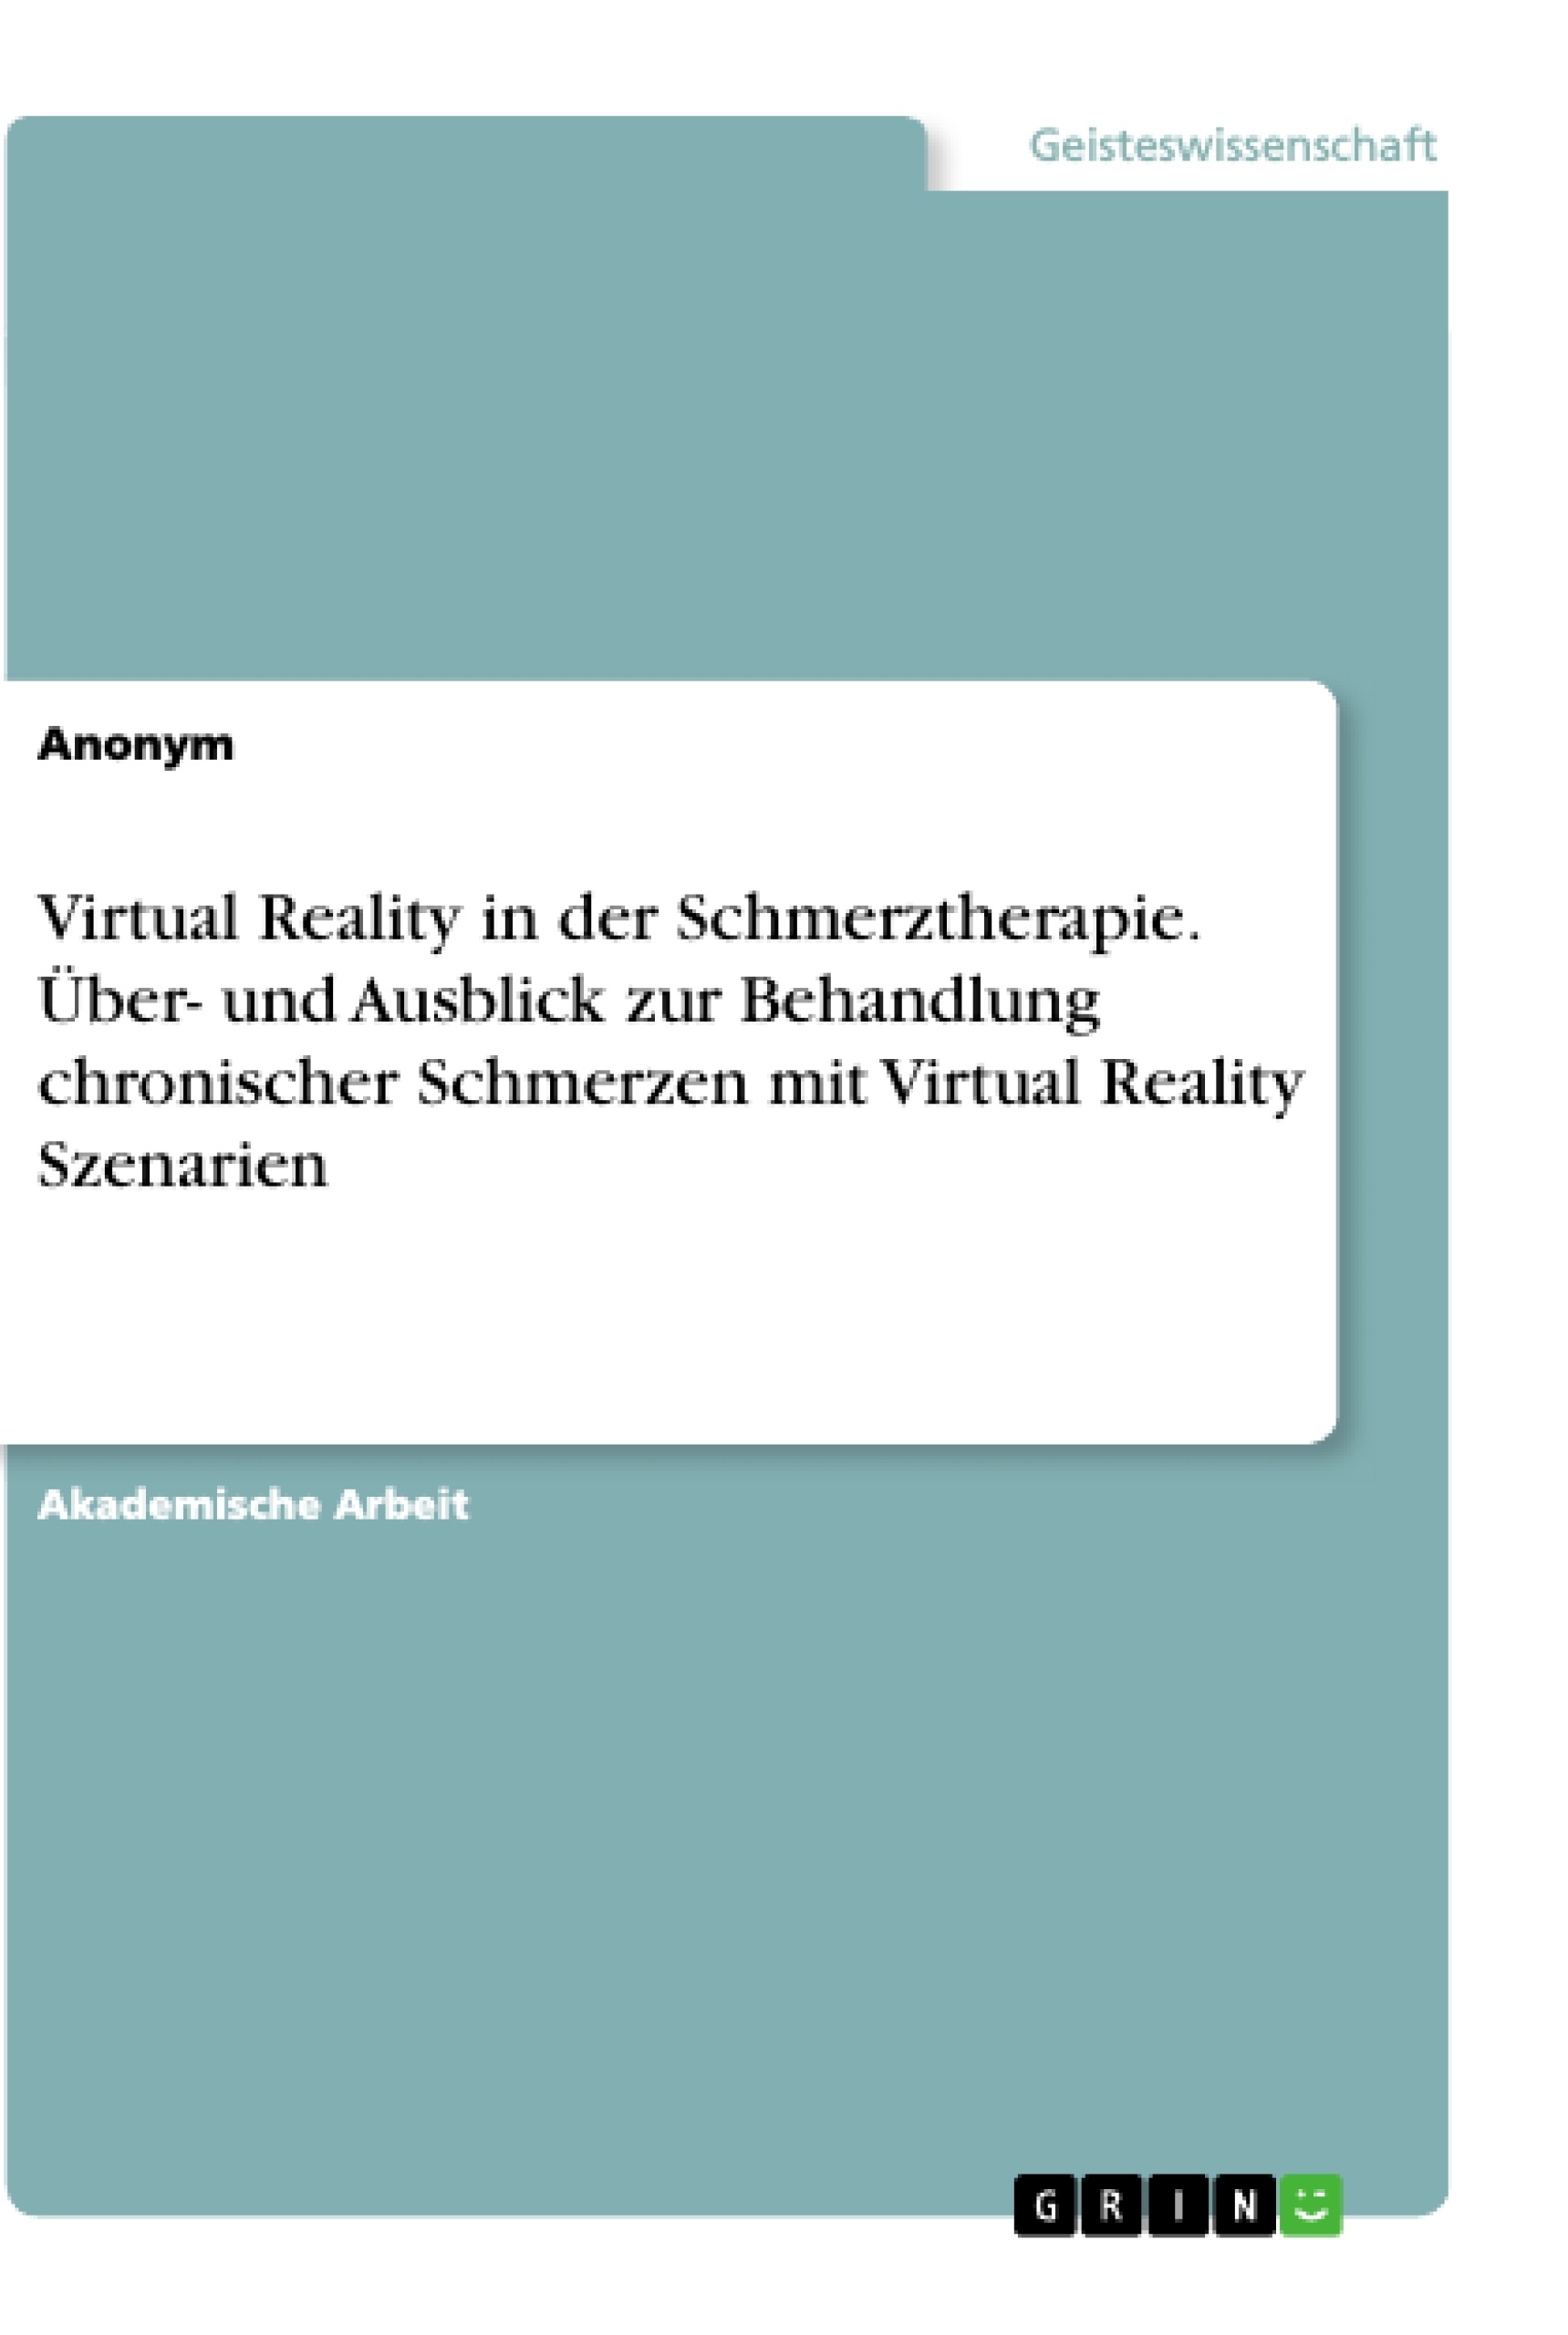 Título: Virtual Reality in der Schmerztherapie. Über- und Ausblick zur Behandlung chronischer Schmerzen mit Virtual Reality Szenarien